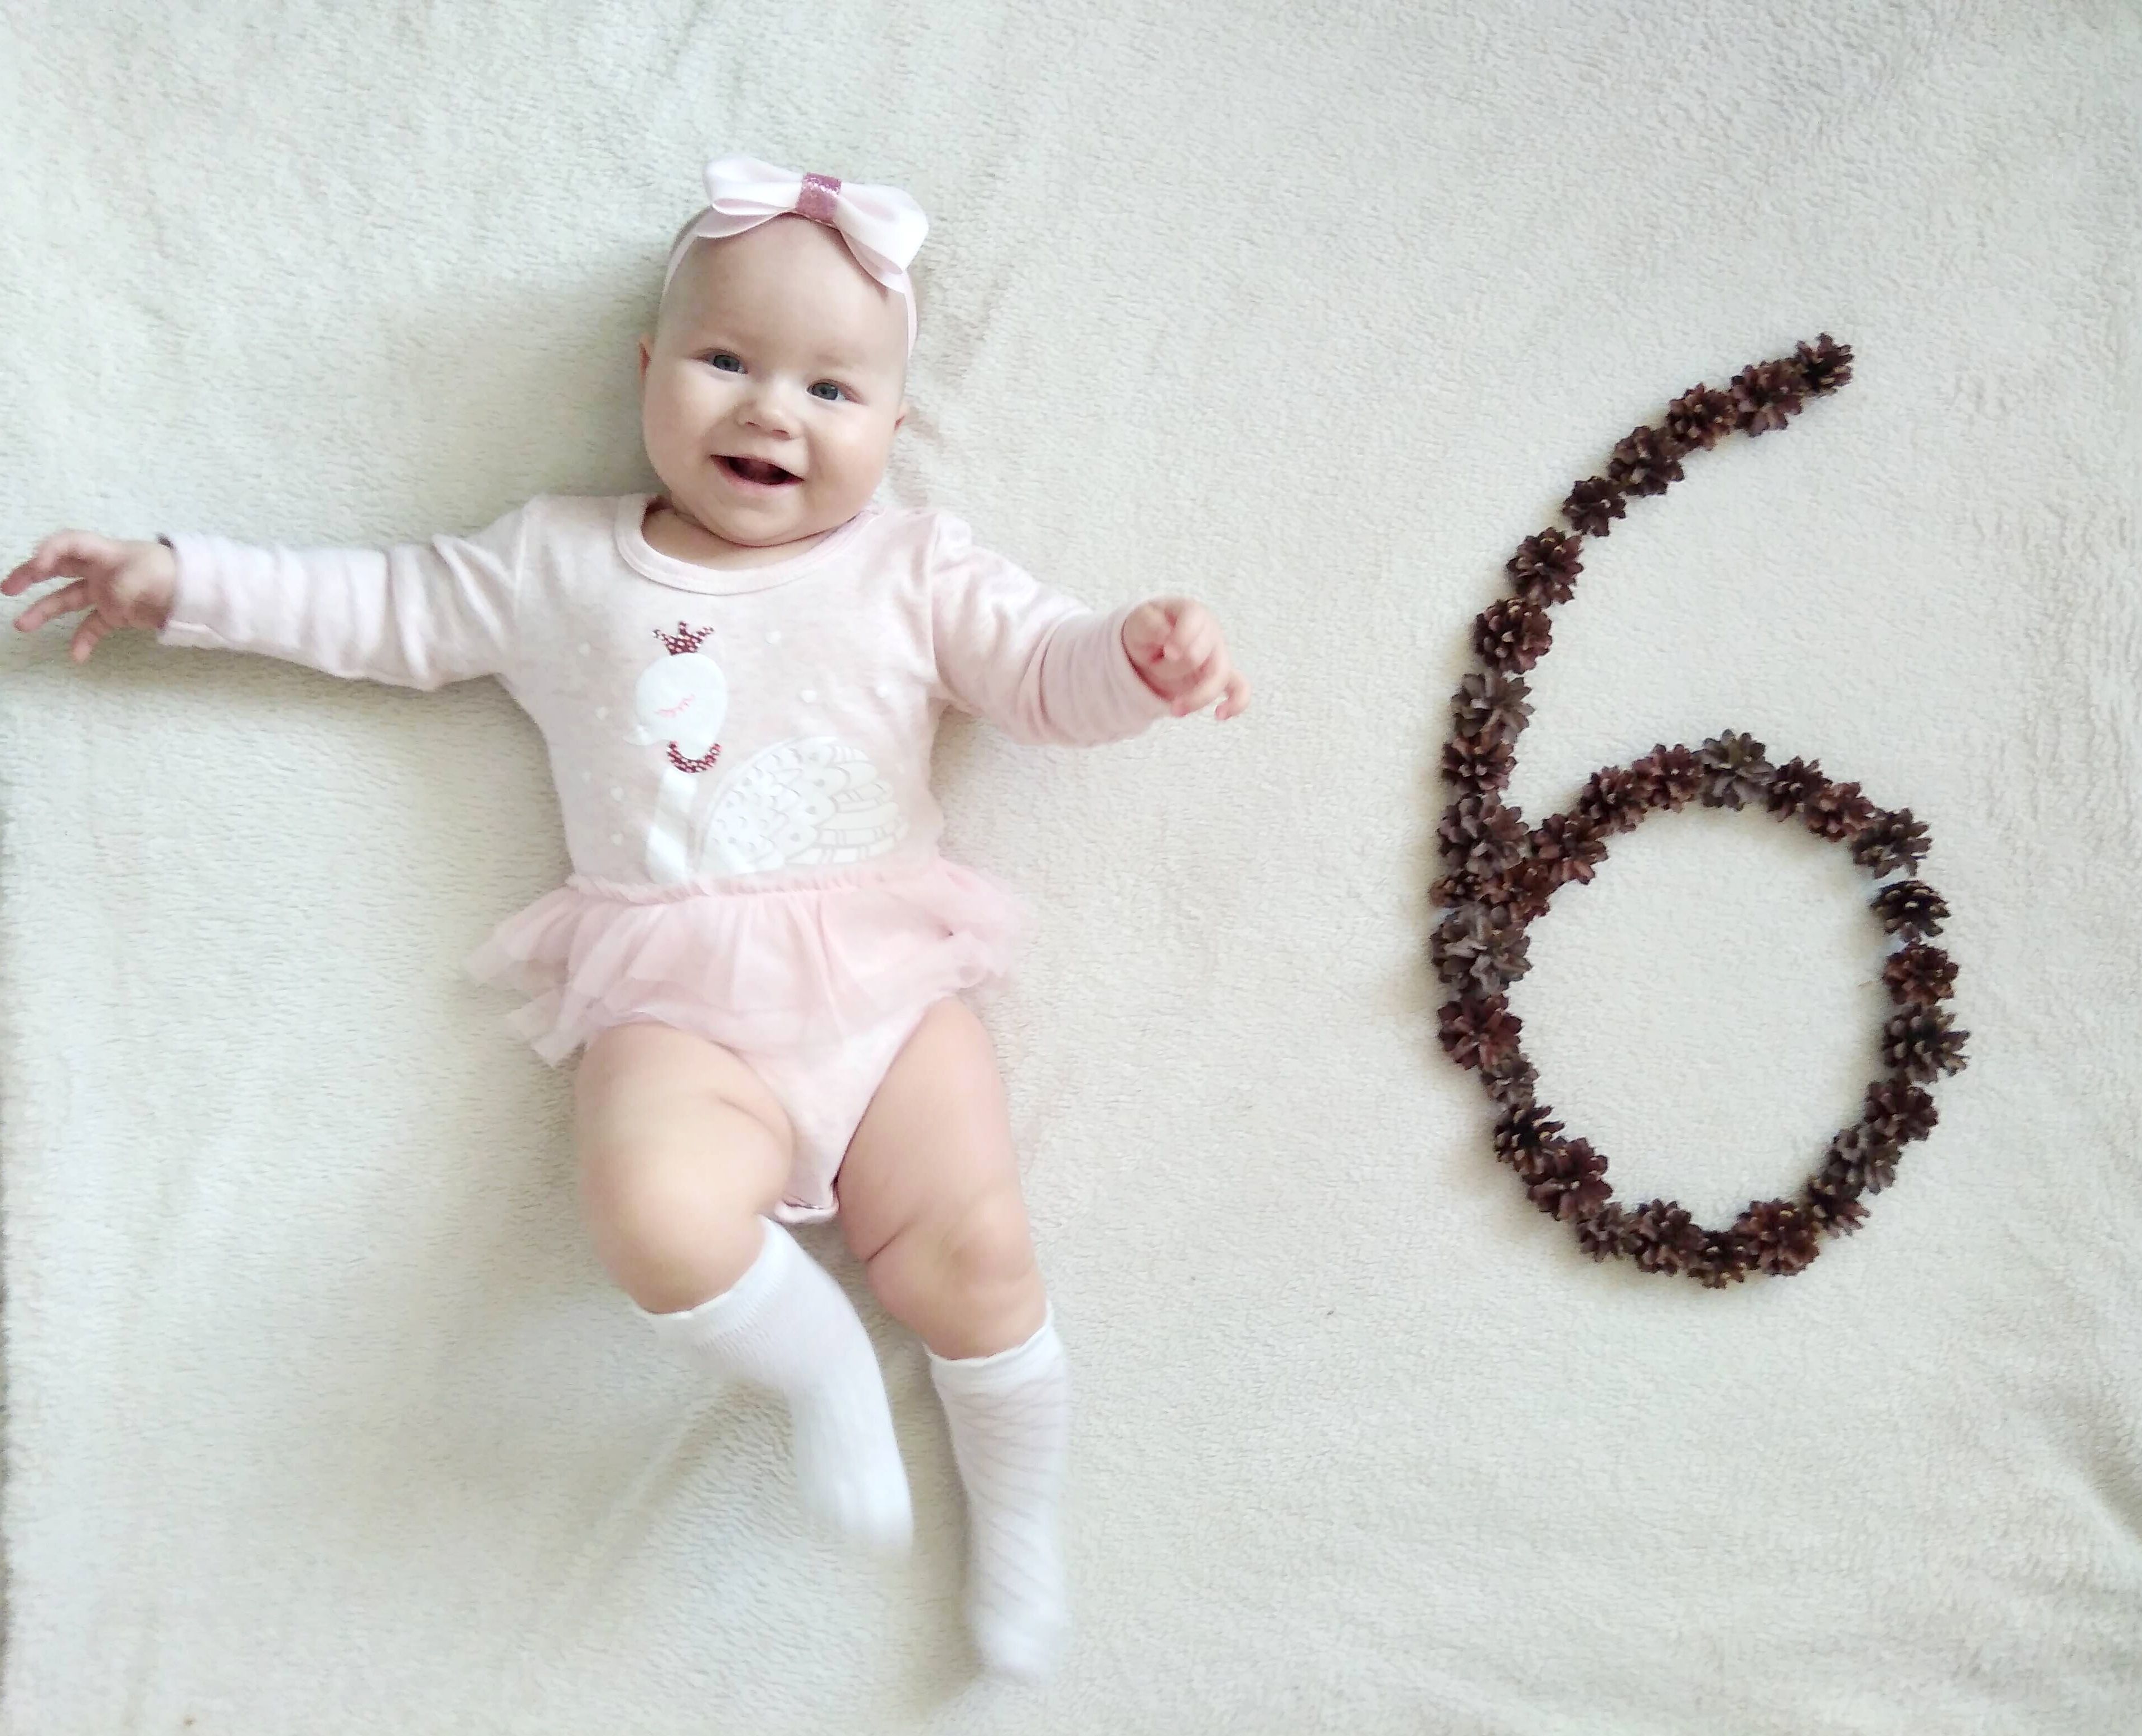 Фото 5 месяцев ребенку с цифрой 5